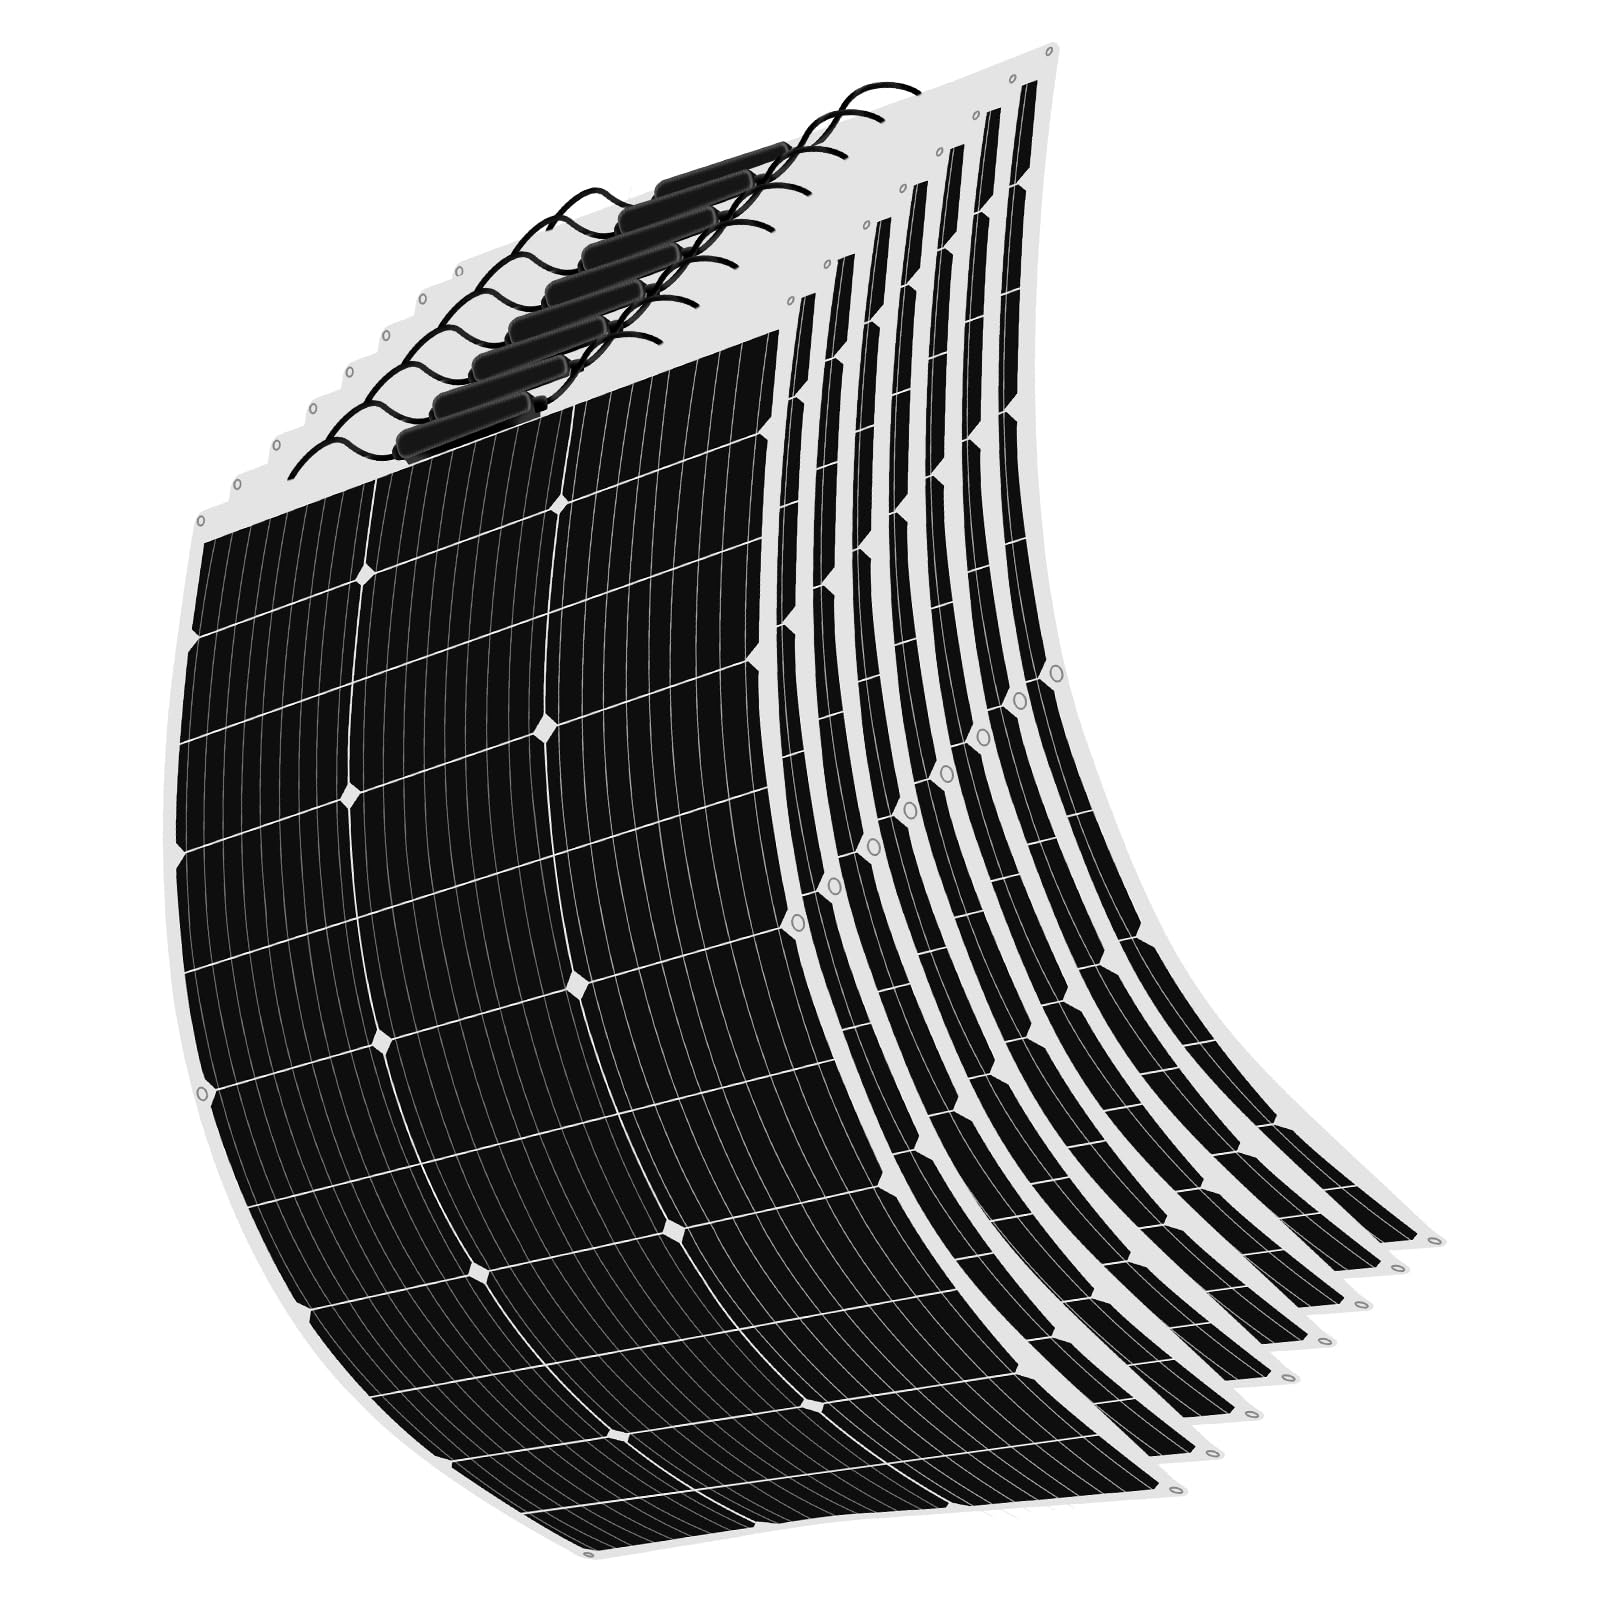 800W 12V Solarpanel 8 stücke 100W Flexible Solarmodul Monokristallin Photovoltaik Solarzelle für Wohnmobile, Dächer, Wohnwagen, Boot,12 V Batterie und Unebene Oberflächen(800W)